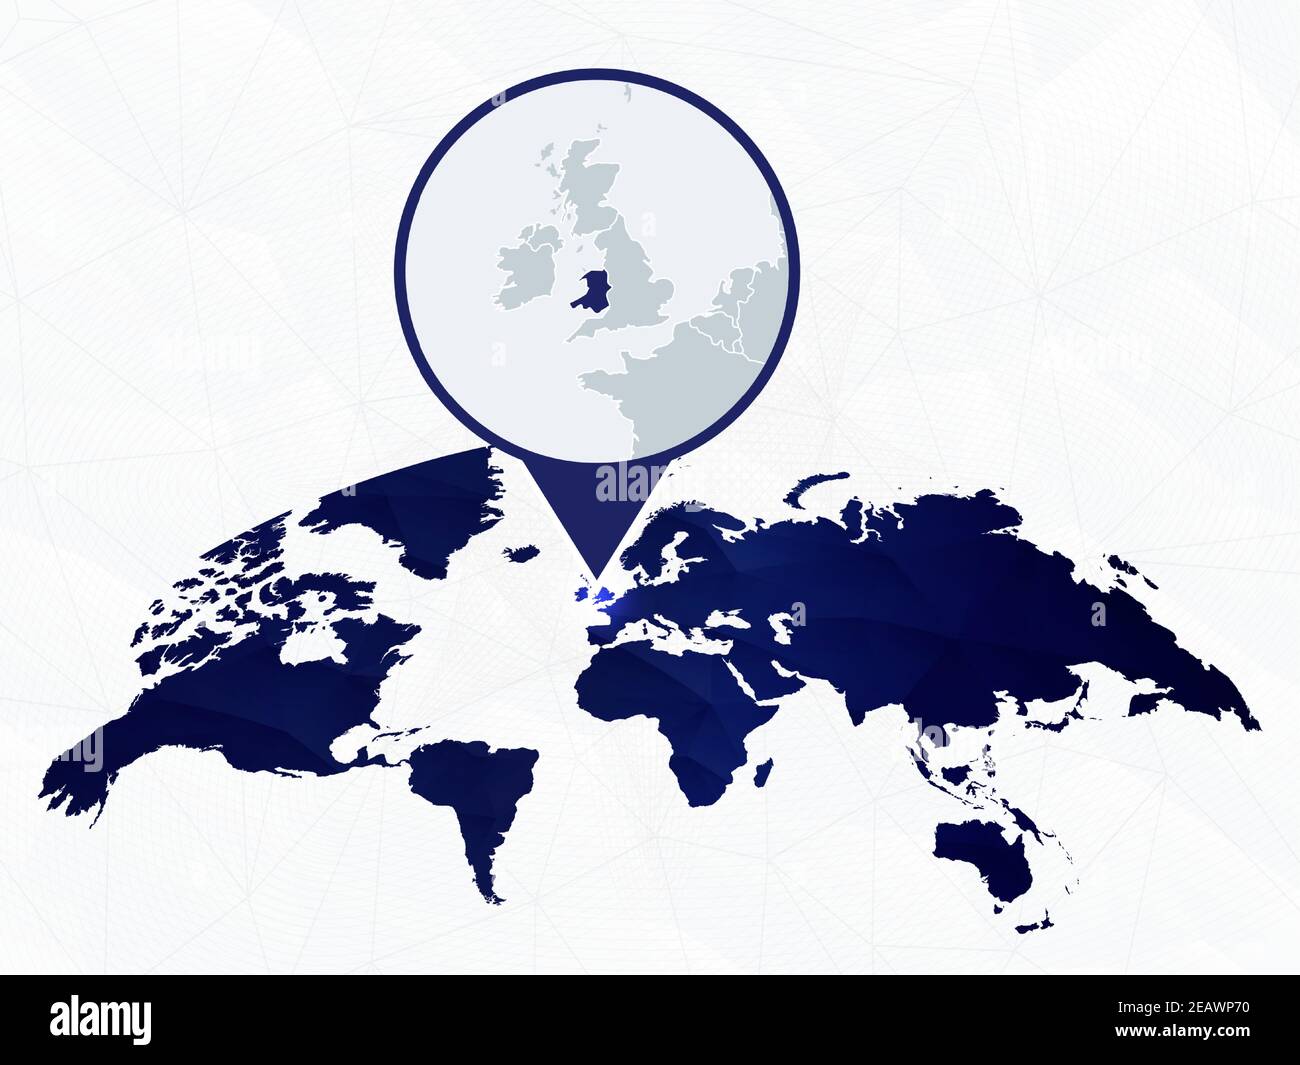 Wales Detailkarte hervorgehoben auf blauer abgerundeter Weltkarte. Karte von Wales im Kreis. Stock Vektor